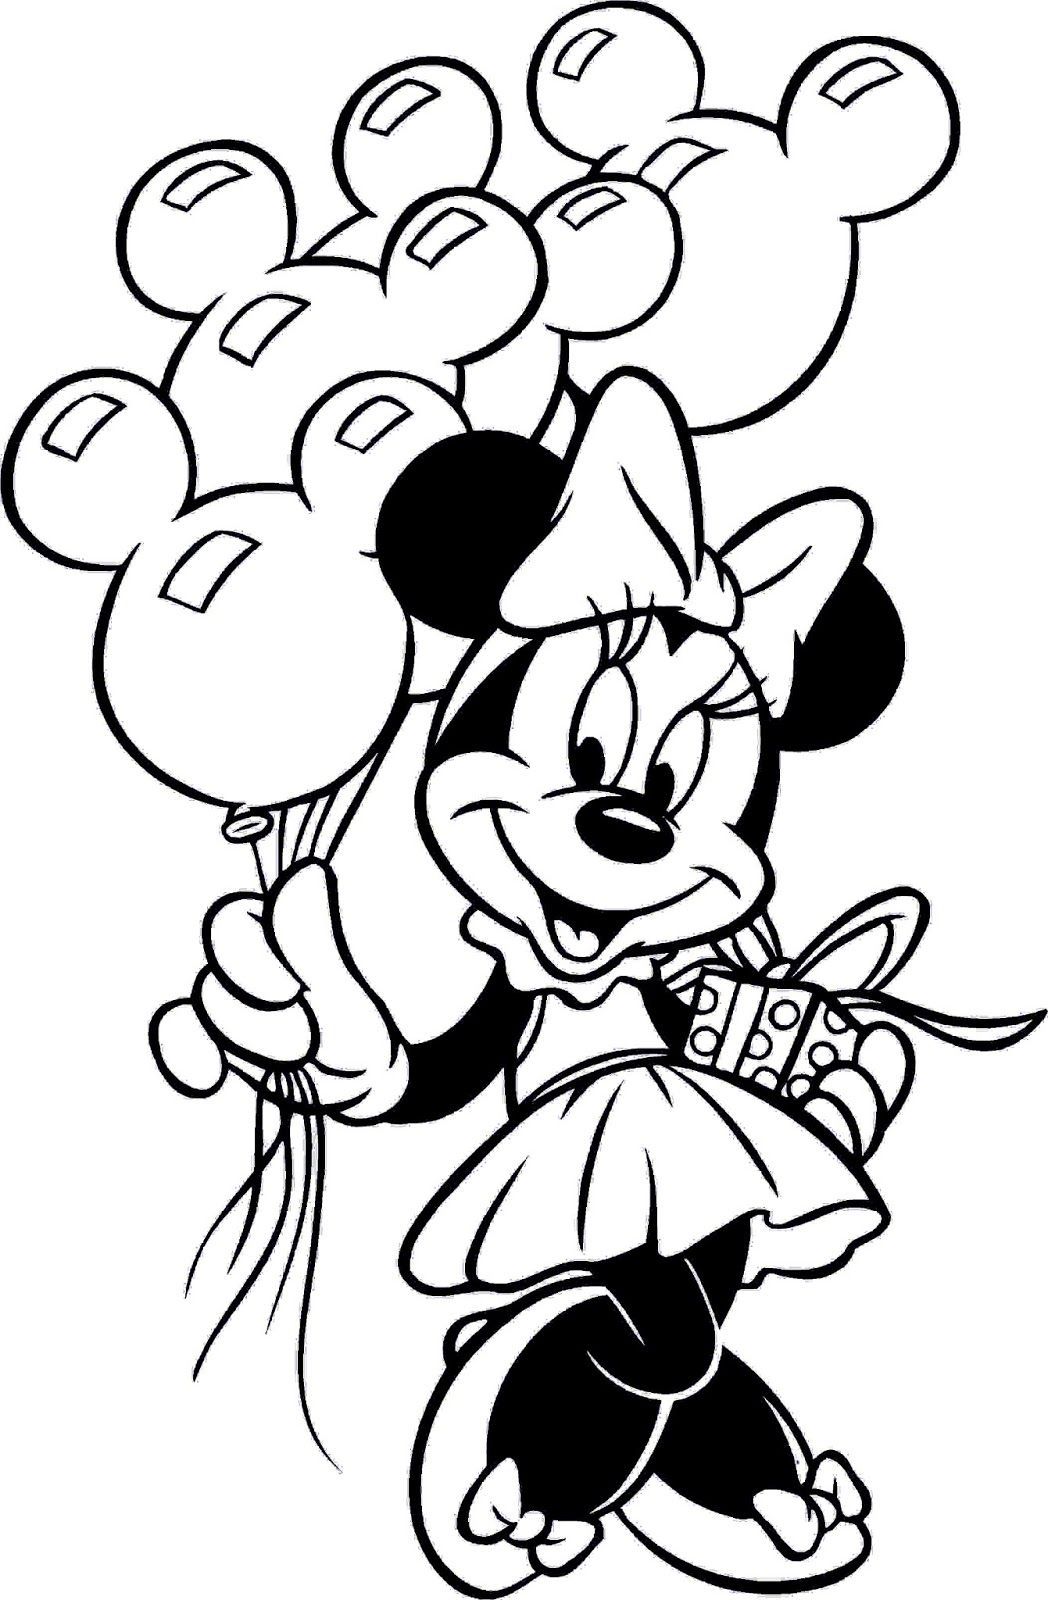 Minnie Mouse avec des ballons de Minnie Mouse